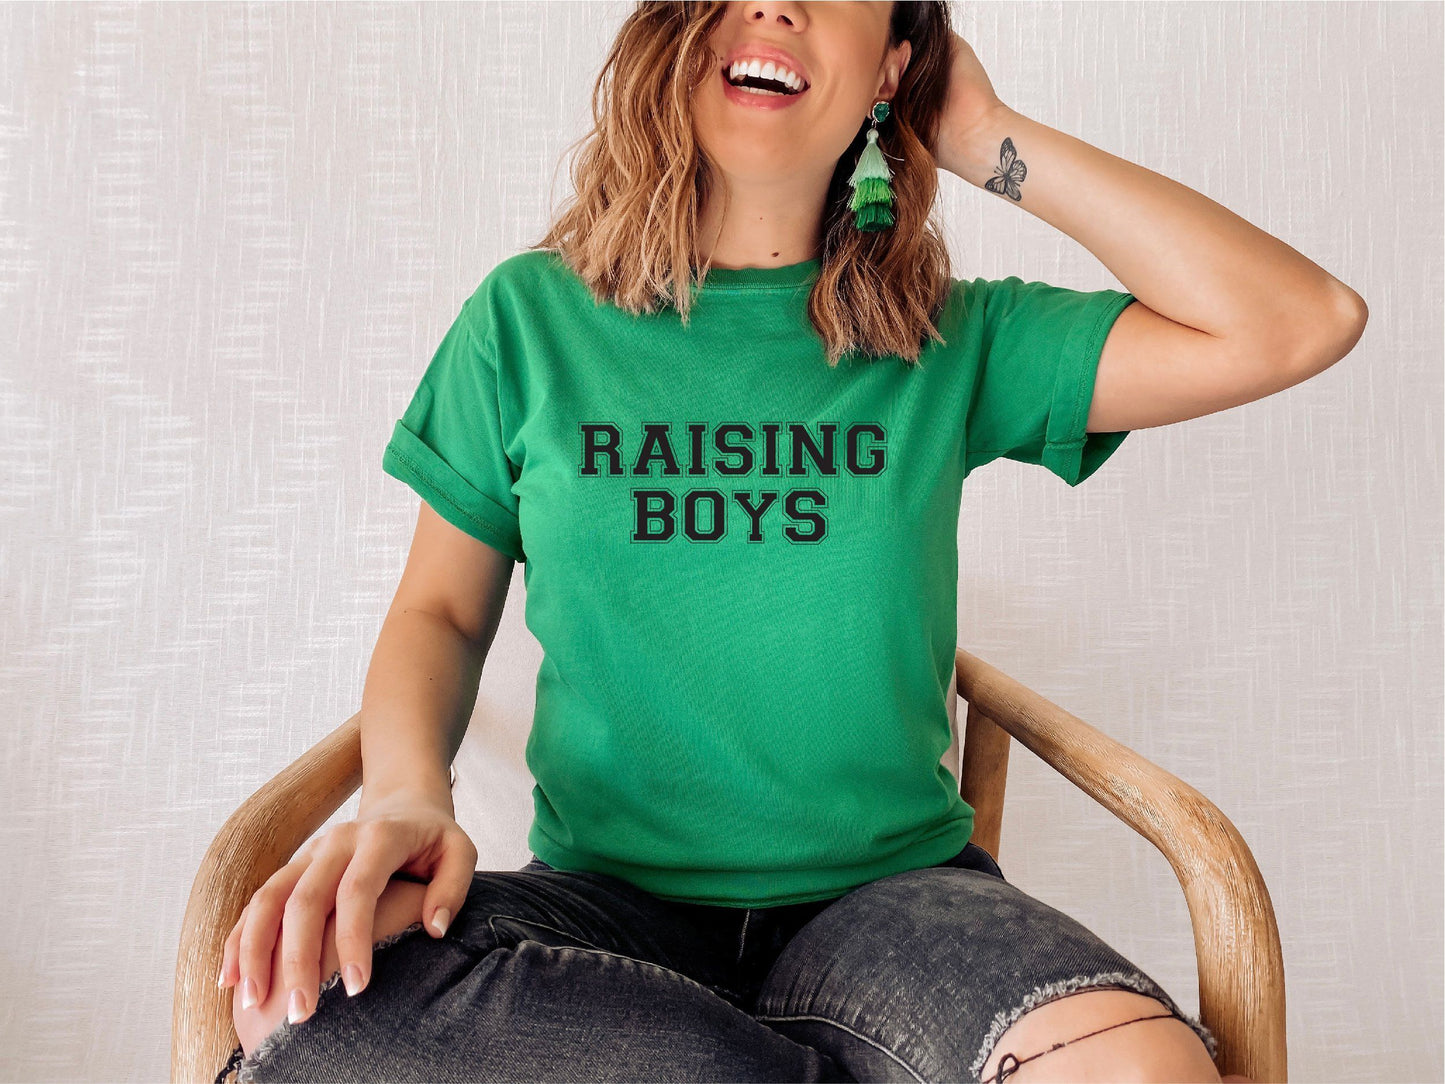 Mum Of Boys Raising Boys Slogan T-shirt